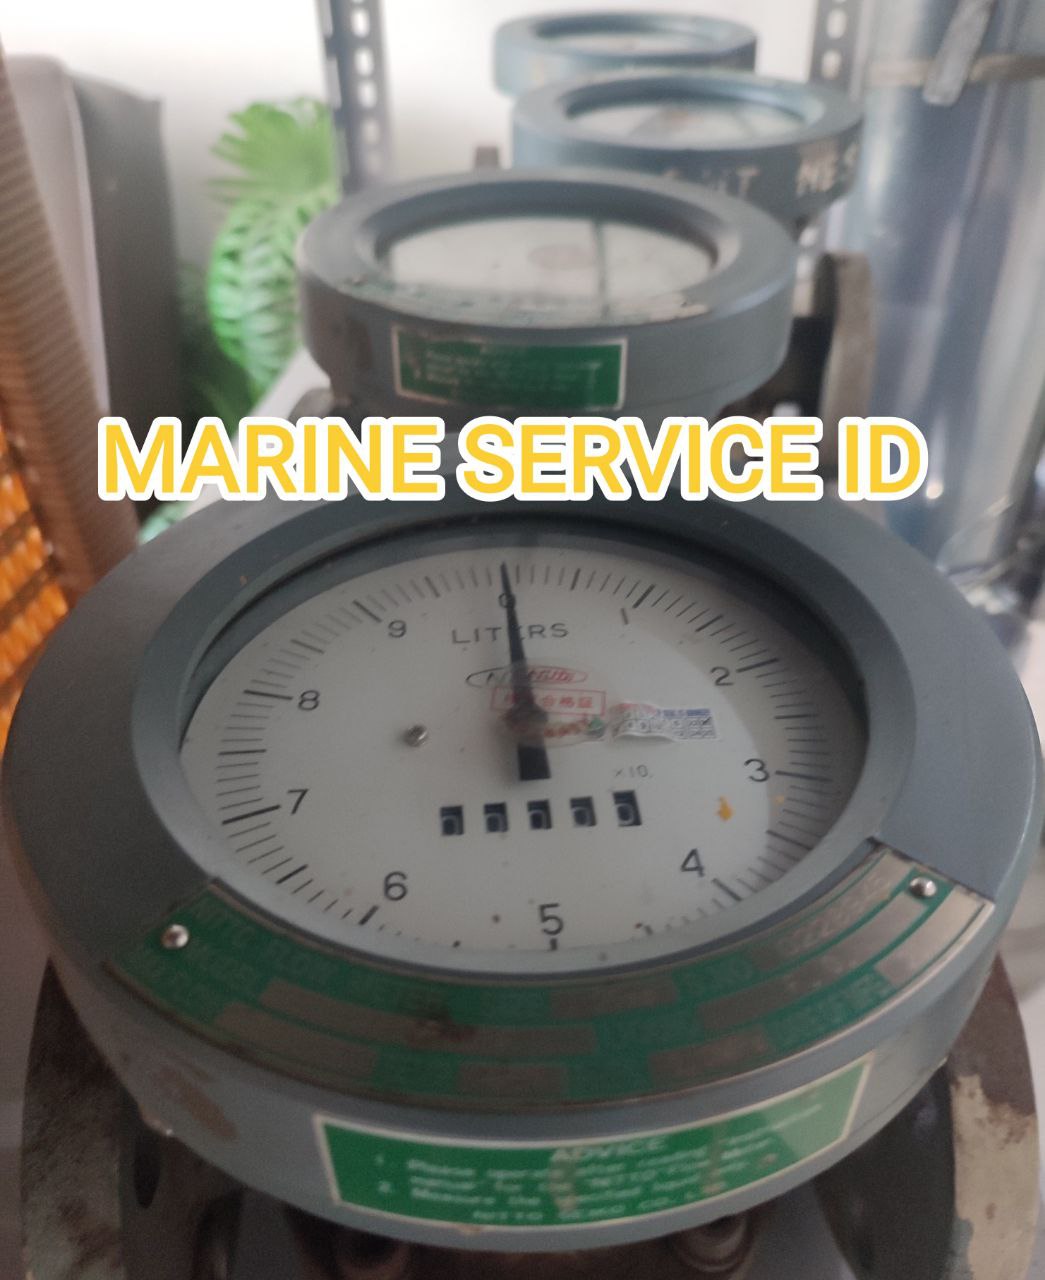 kalibrasi flow meter marine service id